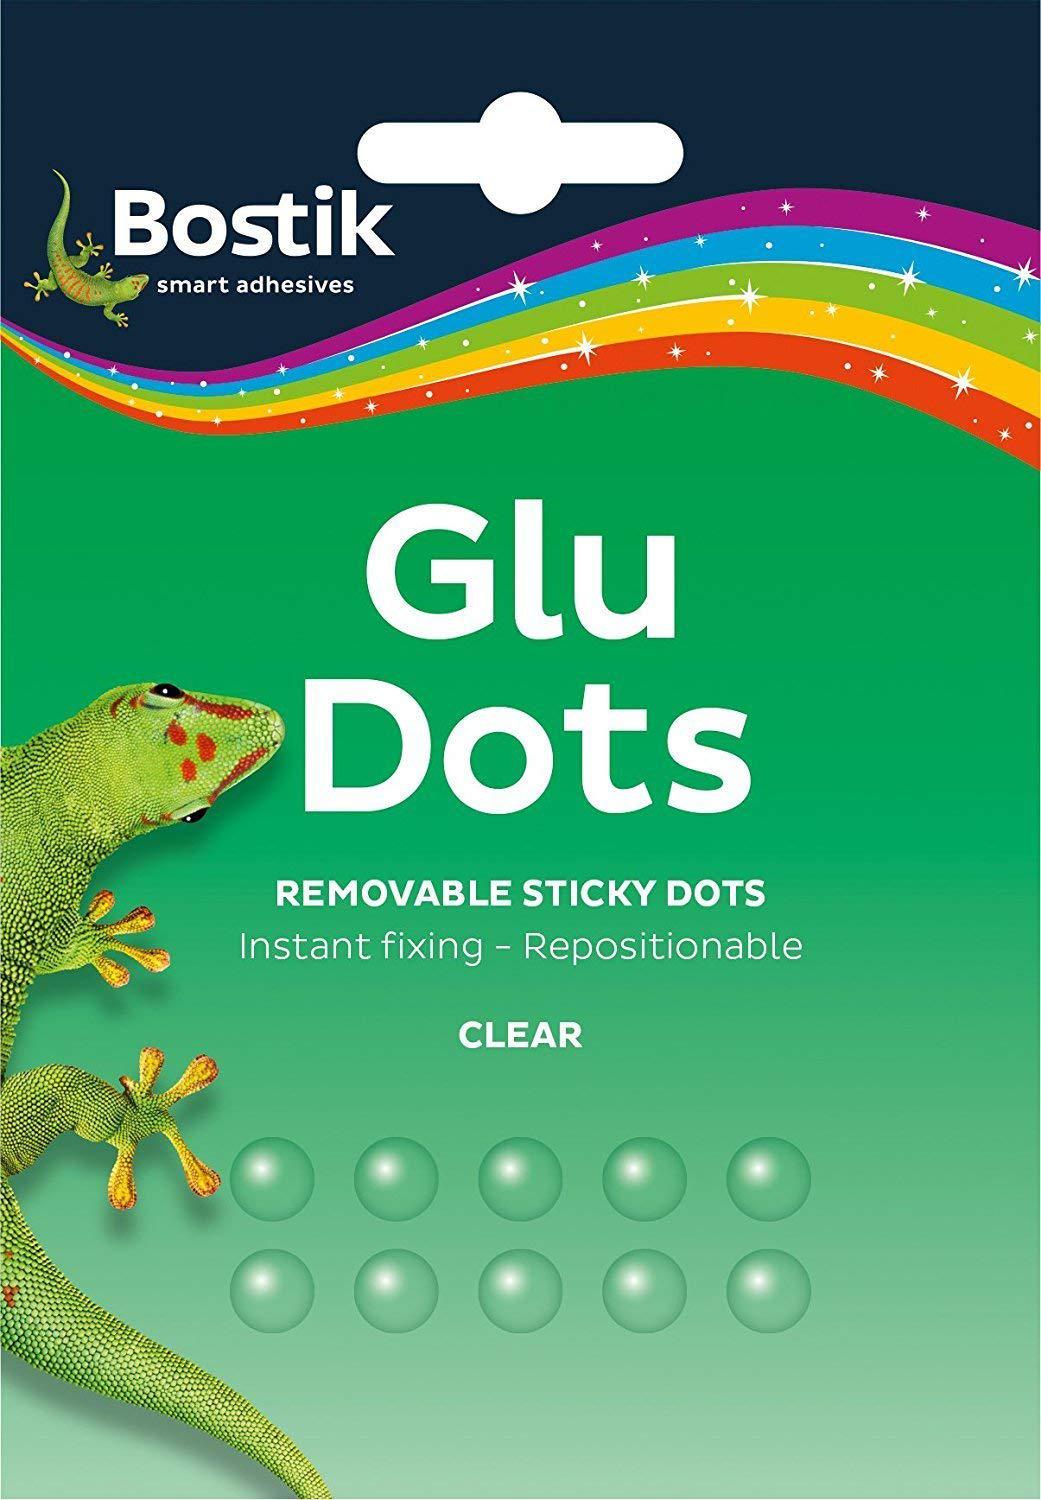 bostik 3 x glu dots removable clear sticky dots